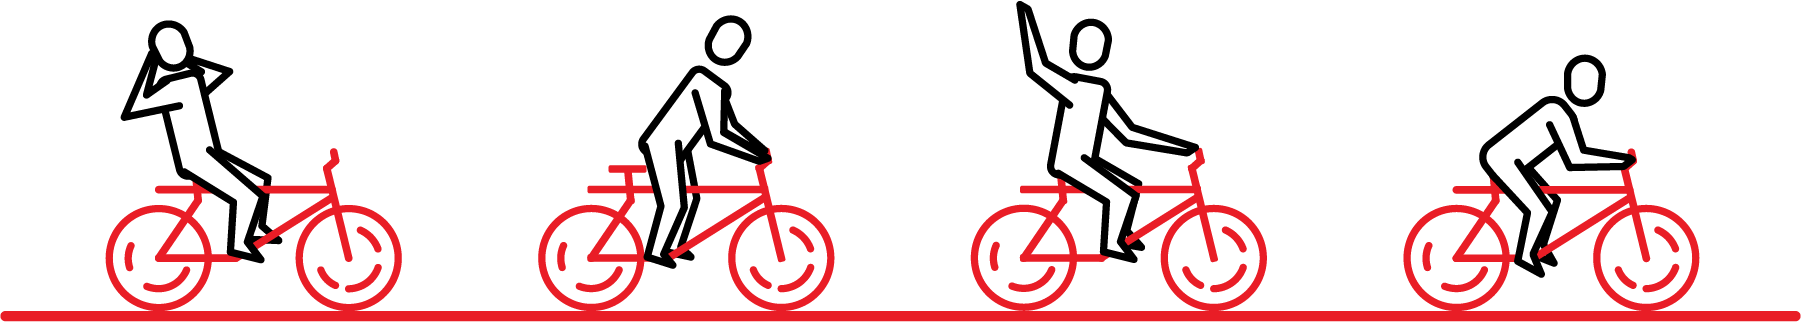 Illustratie van poppetjes op fietsen